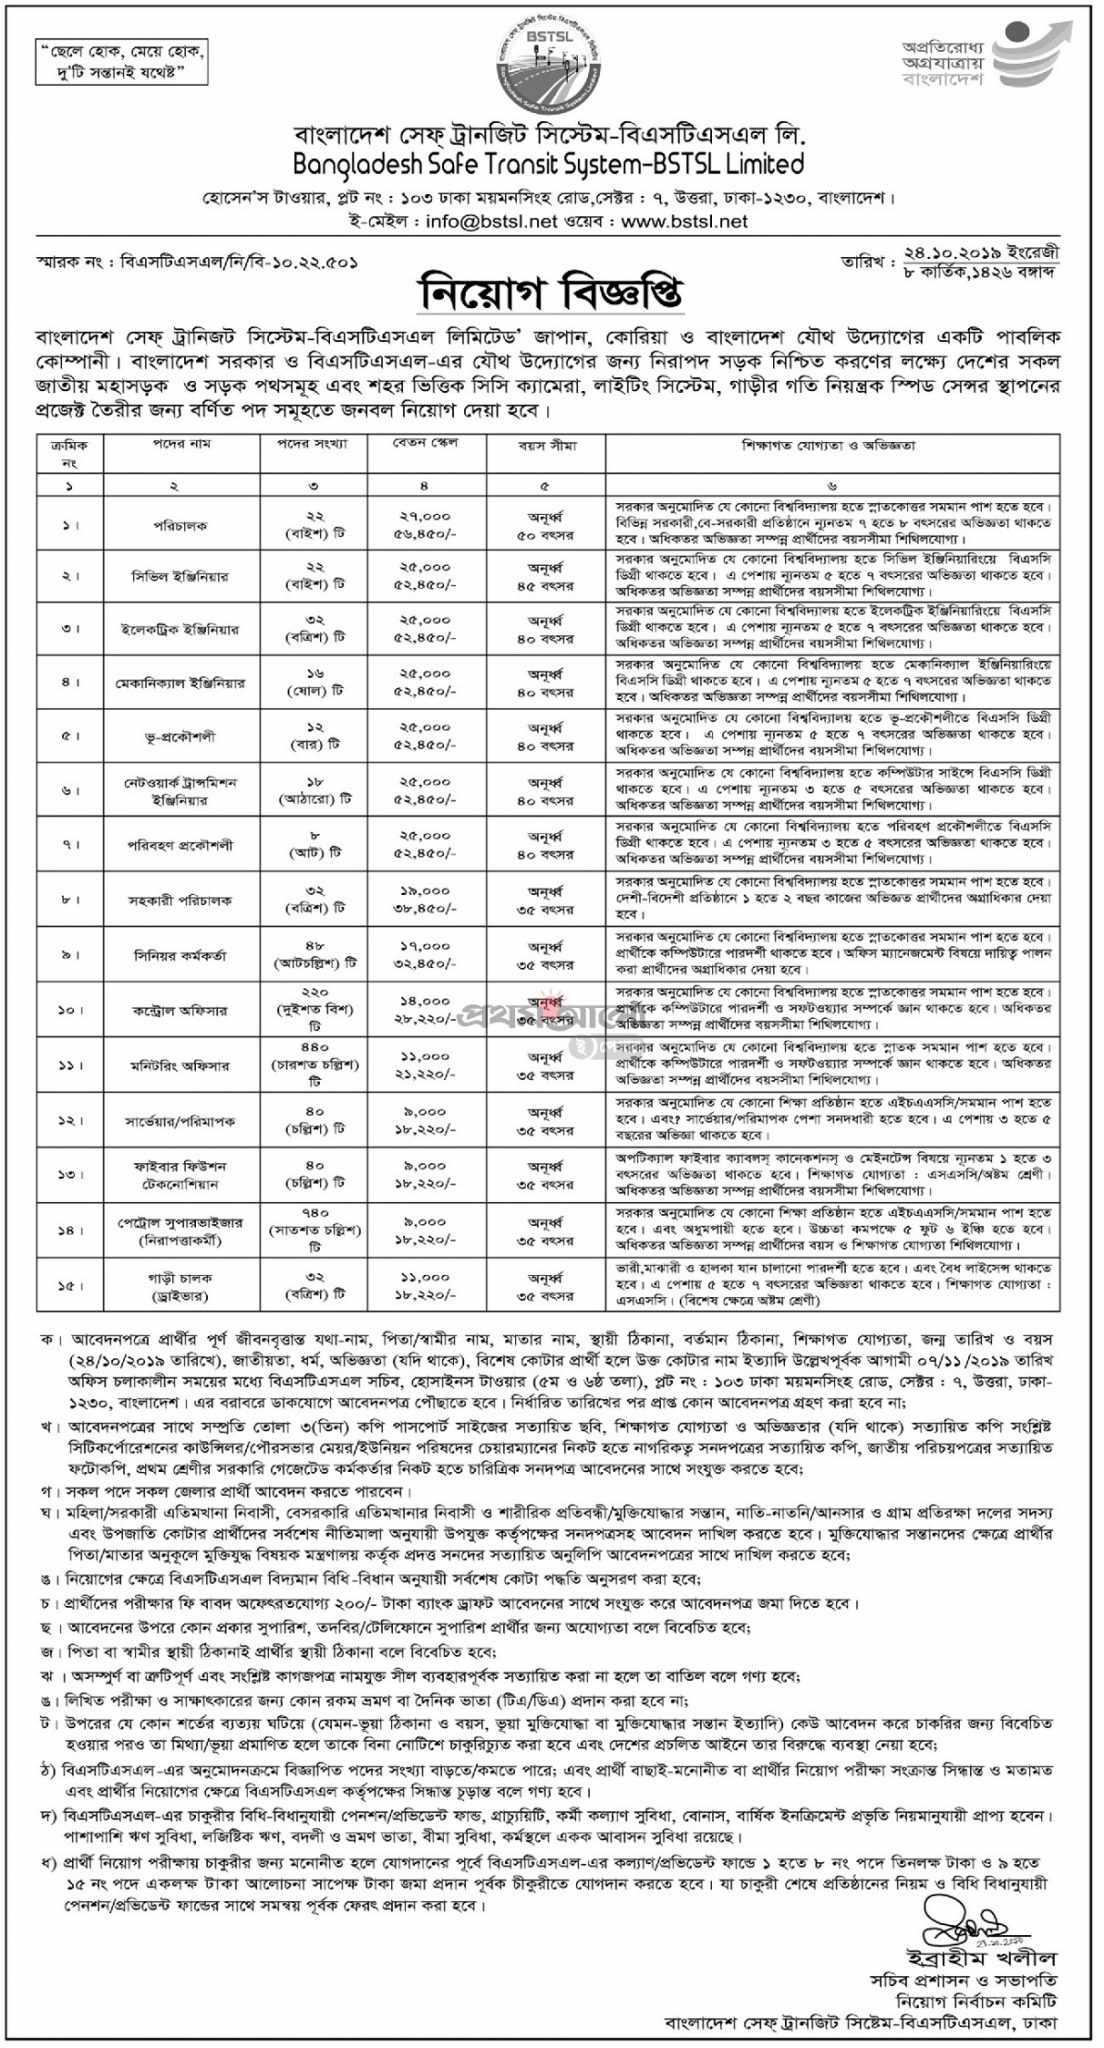 Bangladesh Safe Transit System BSTSL Job Circular 2019